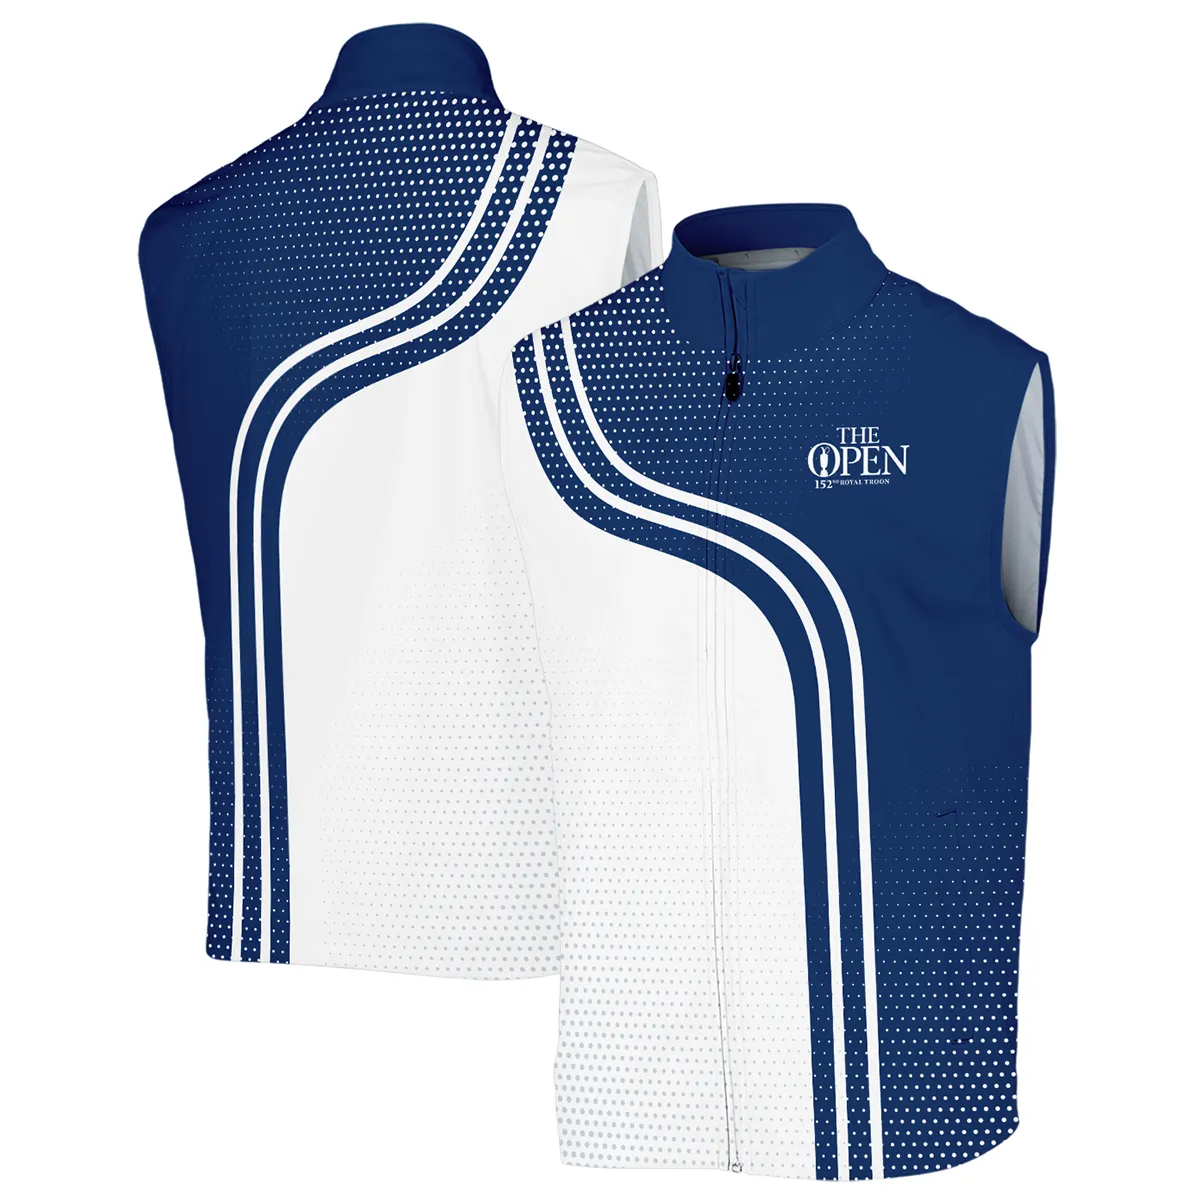 Golf Blue Mix White Sport 152nd Open Championship Pinehurst Rolex Sleeveless Jacket All Over Prints QTTOP1806A1ROXSJK